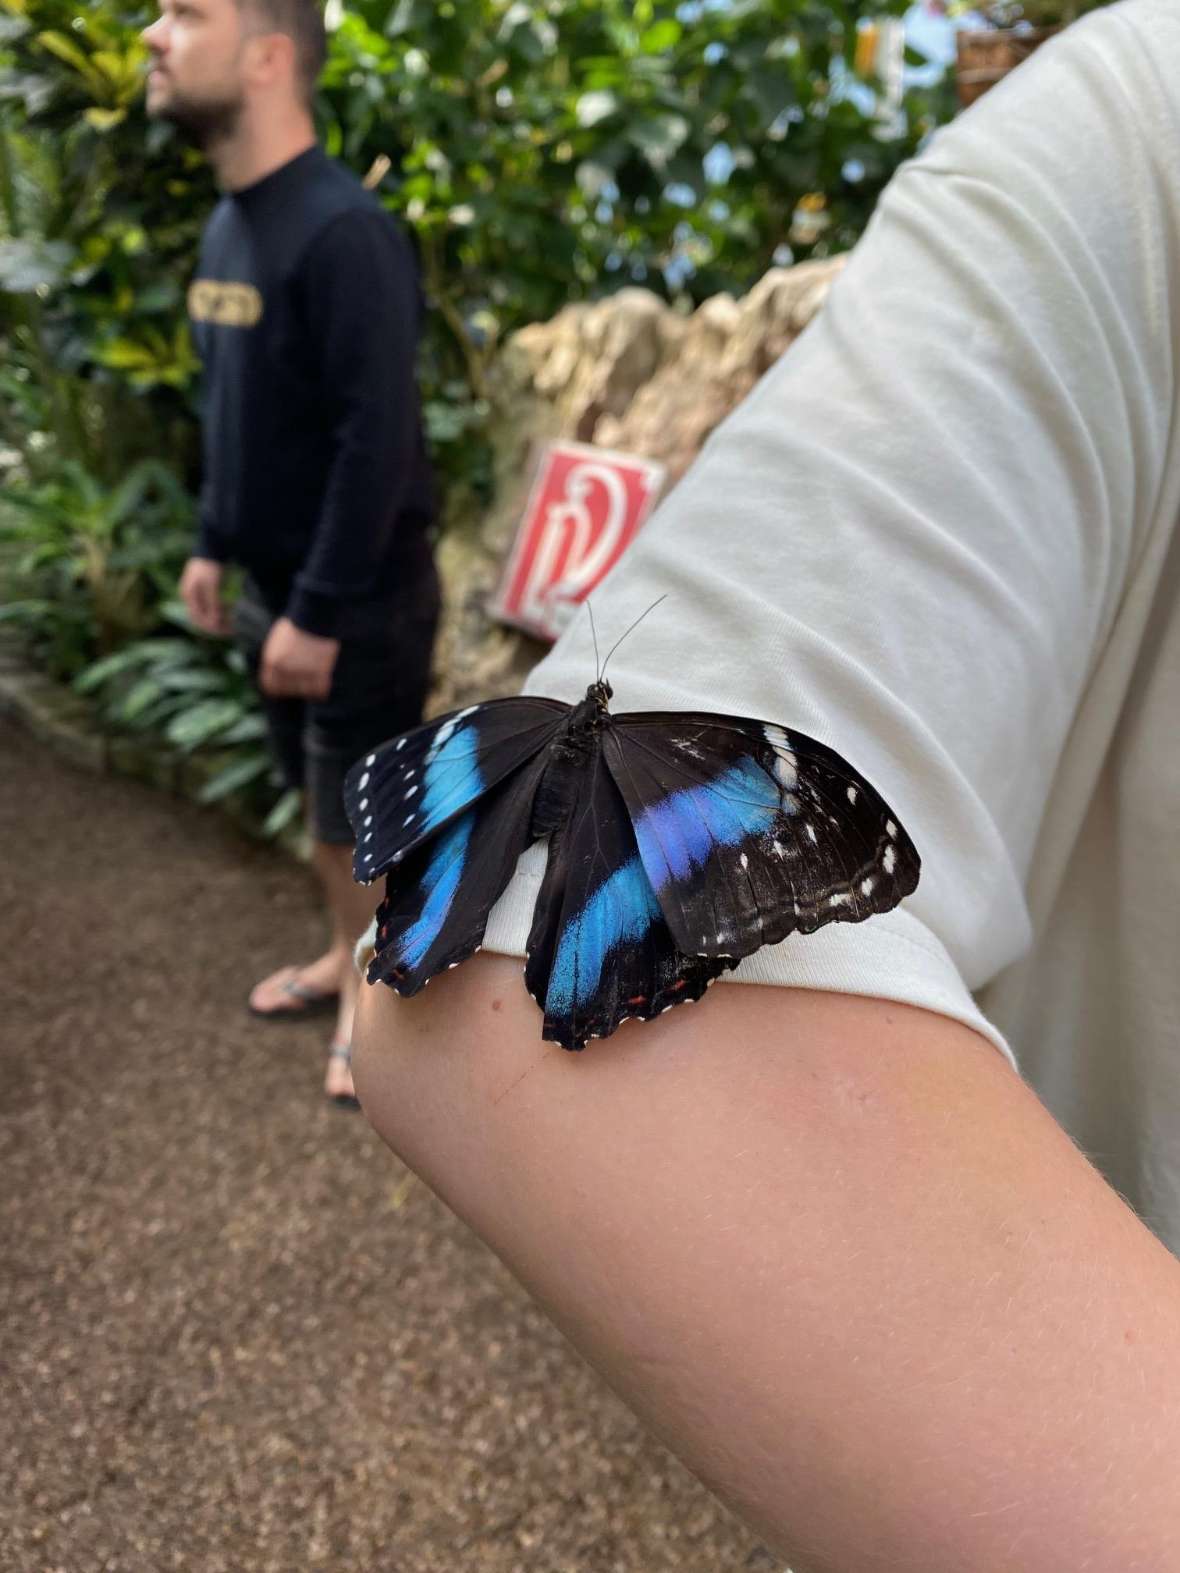 Schmetterling auf Ärmel einer Person gelandet